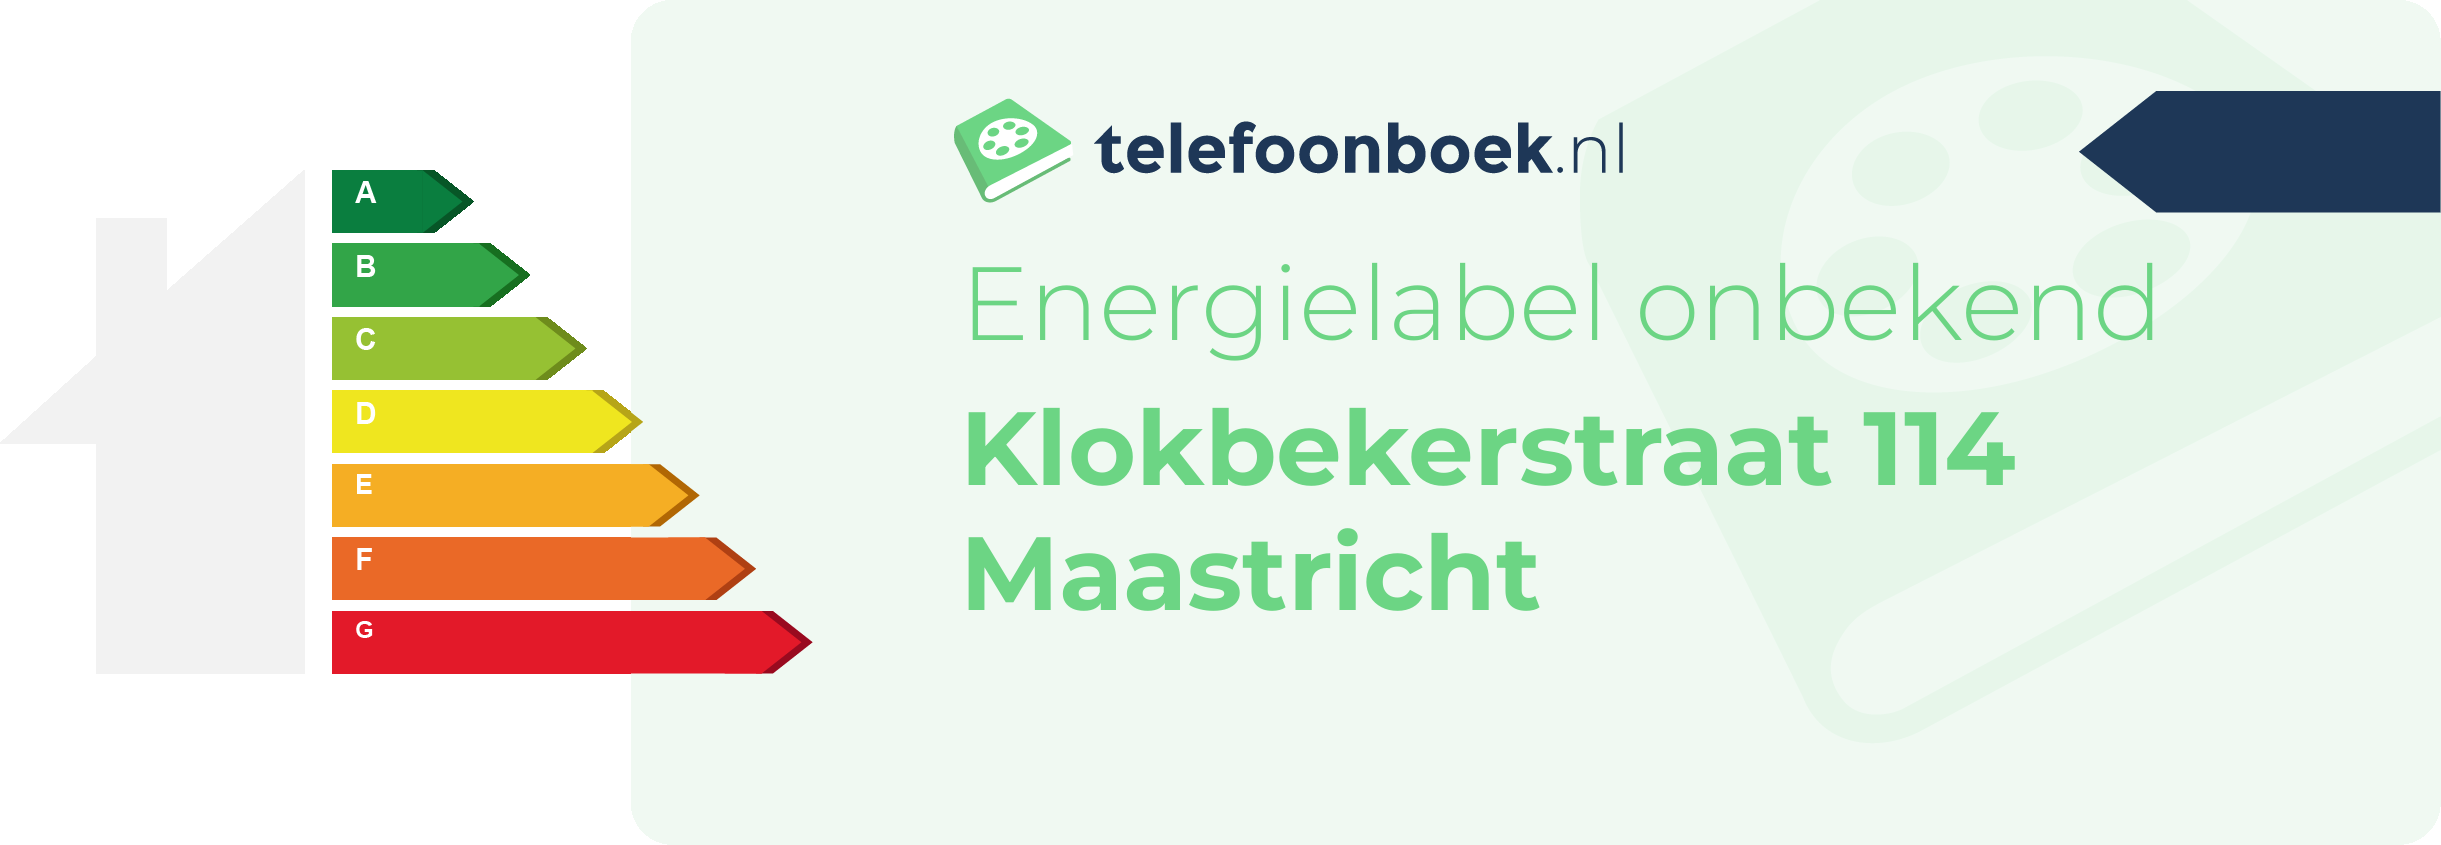 Energielabel Klokbekerstraat 114 Maastricht